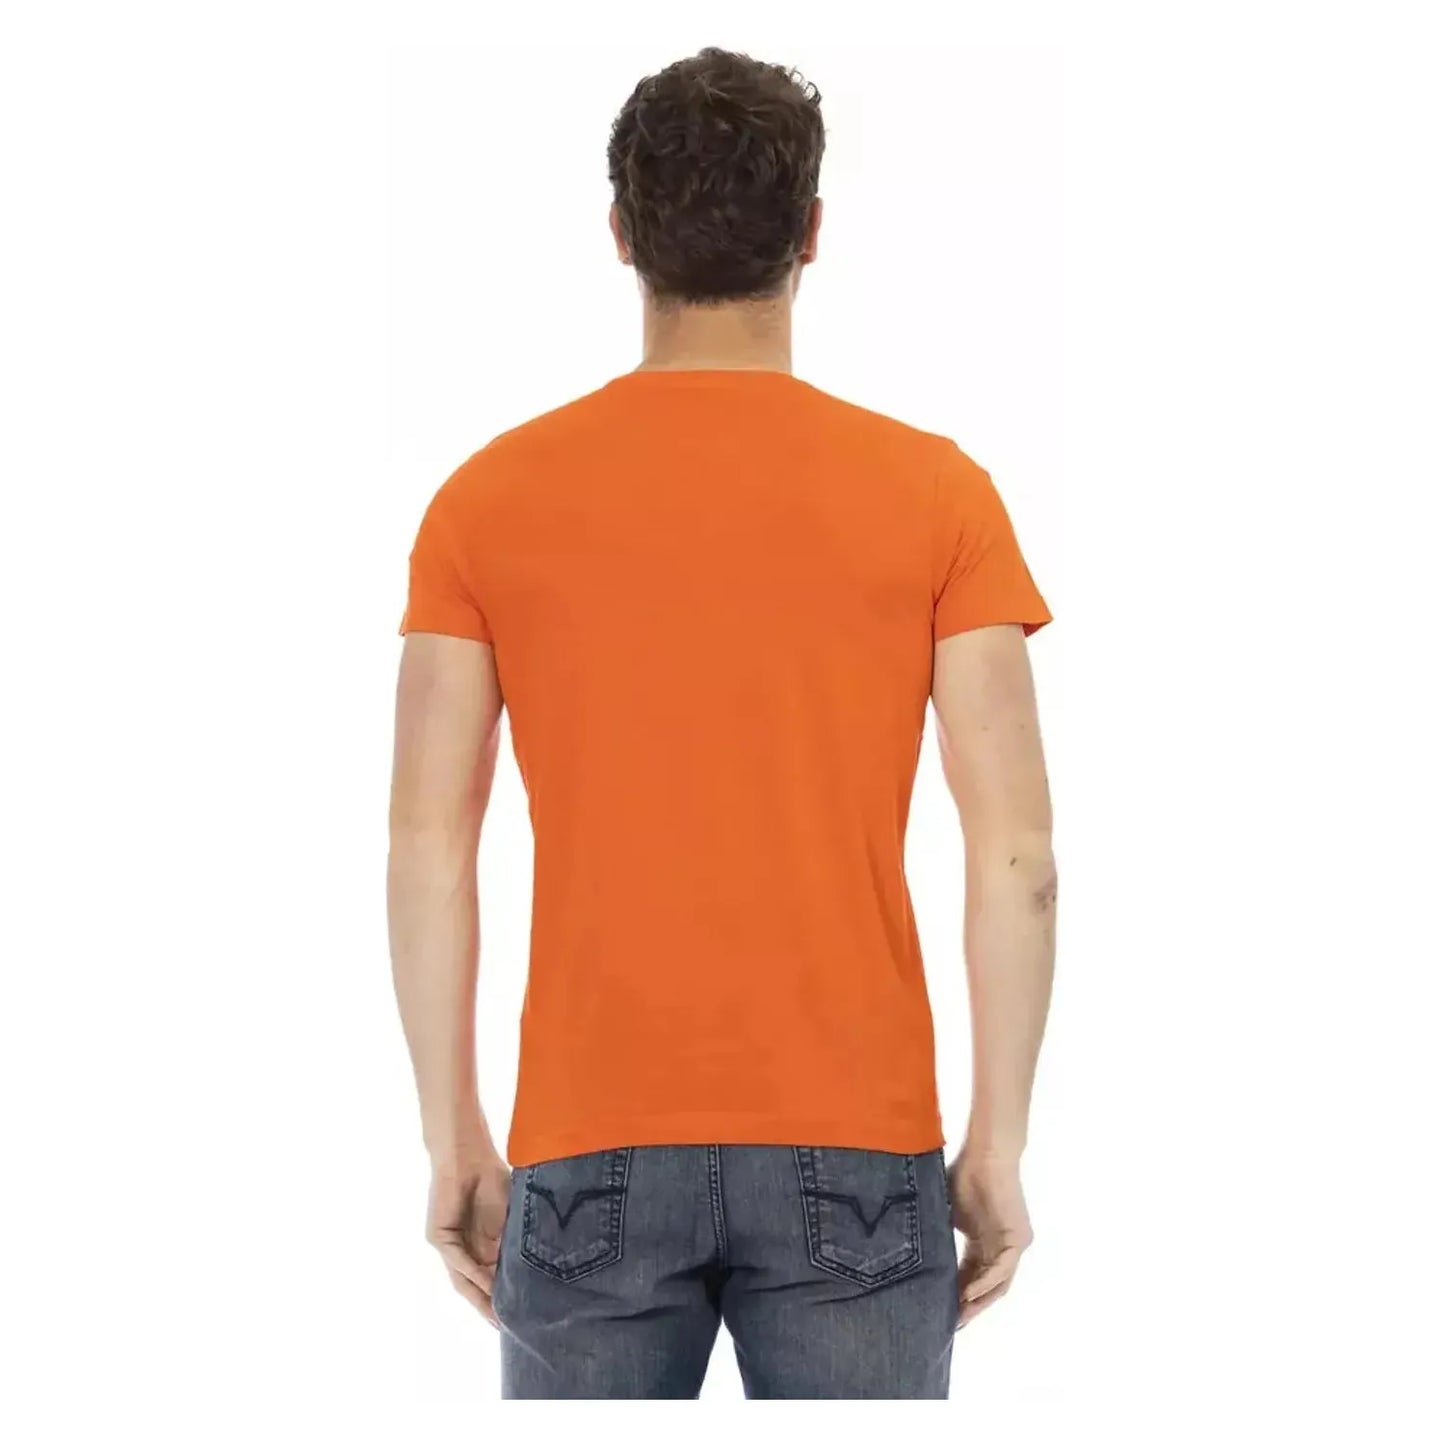 Trussardi Action Elegant Orange Short Sleeve Cotton Tee orange-cotton-t-shirt-25 product-22787-375764751-20-fbcdc4a3-0c6_d9cba8d2-bdcf-4f85-a286-2b9538636c02.webp